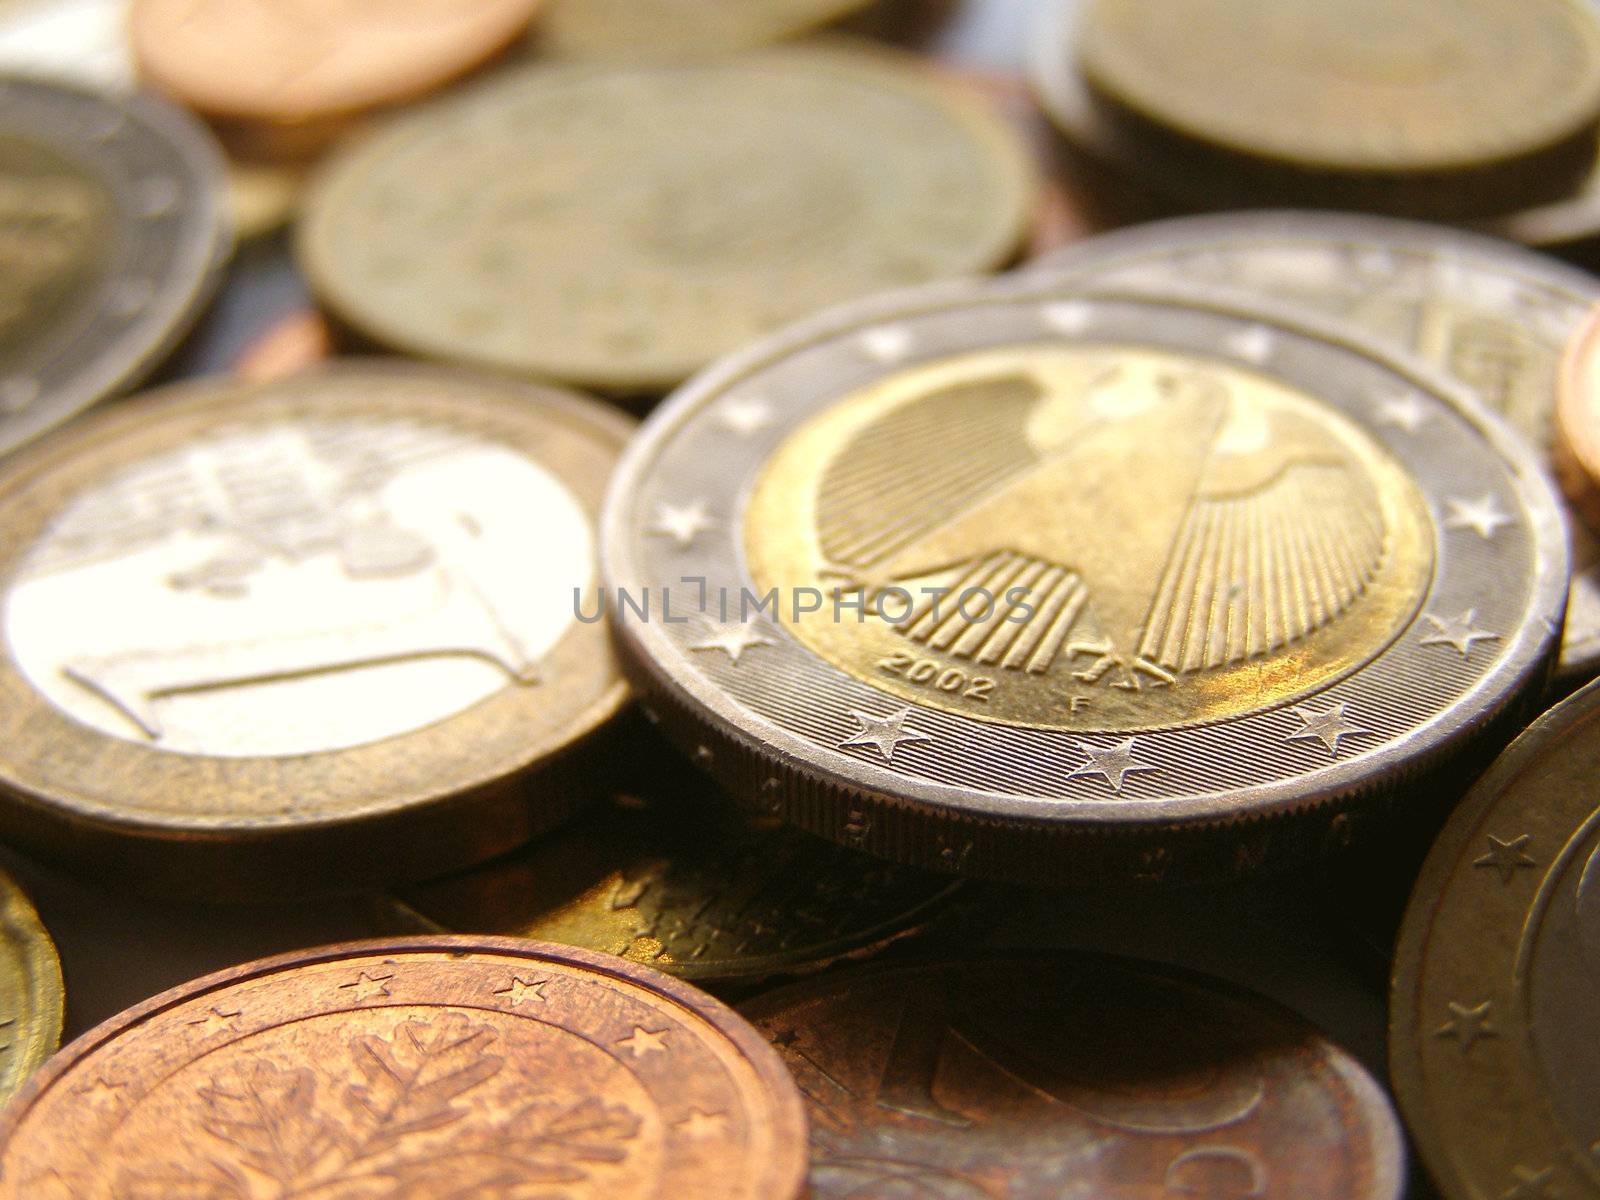 Euro coins money